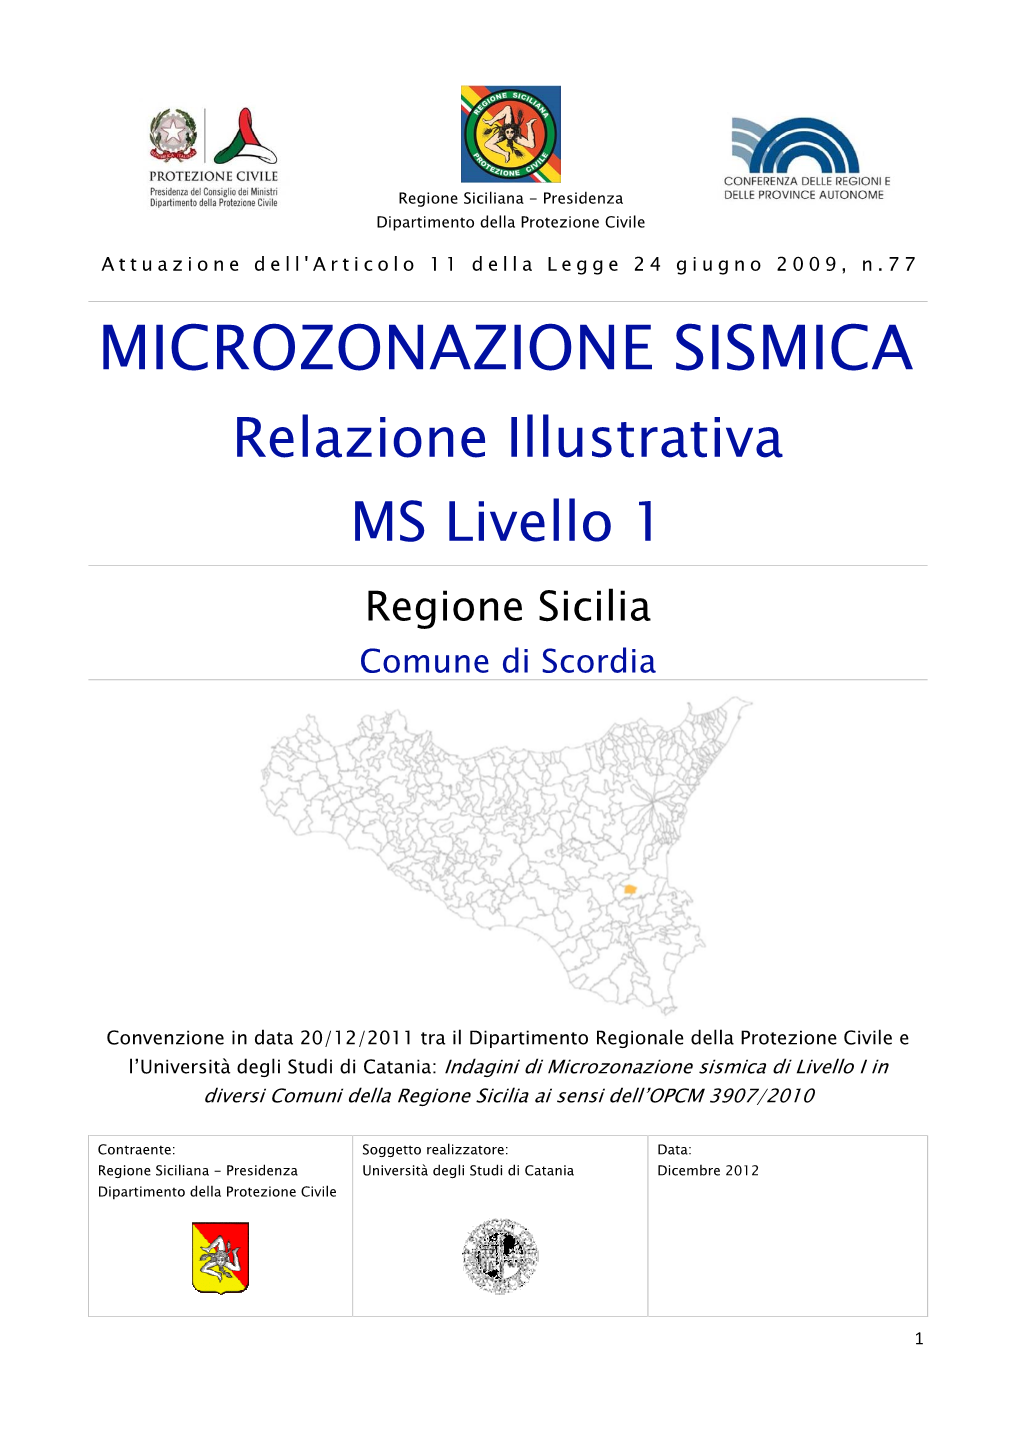 MICROZONAZIONE SISMICA Relazione Illustrativa MS Livello 1 Regione Sicilia Comune Di Scordia